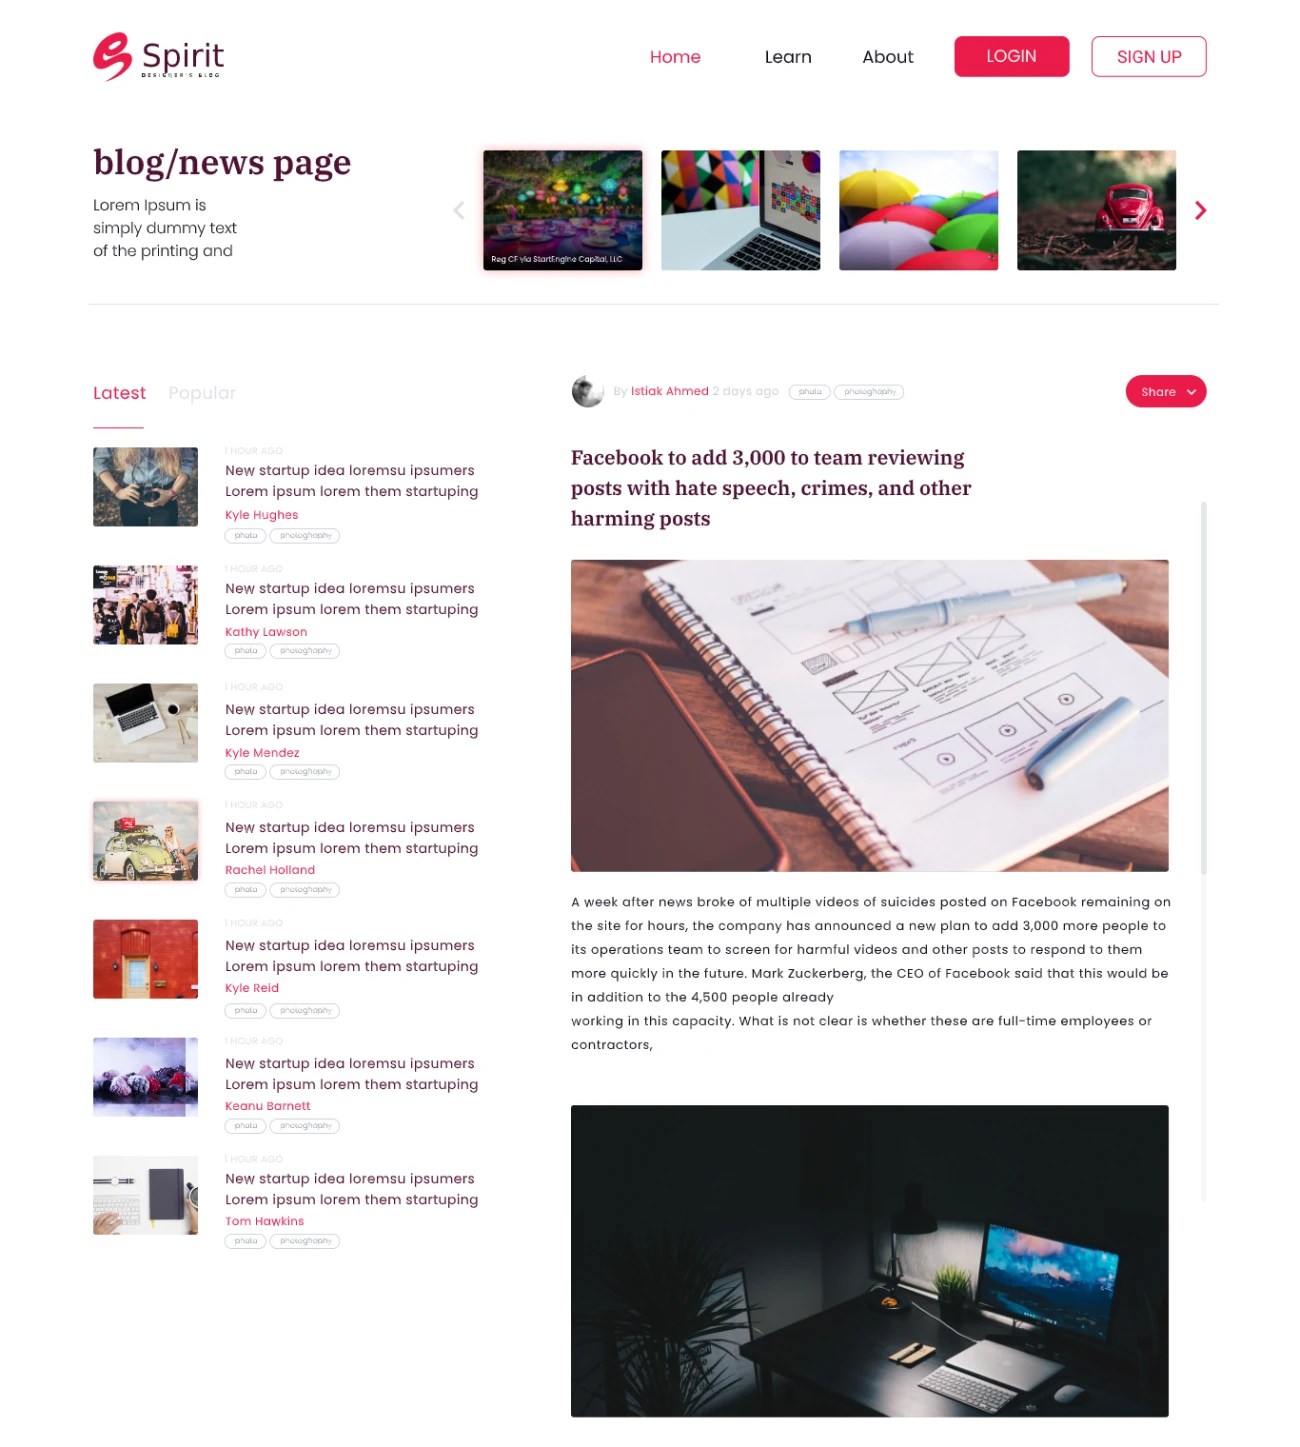 博客新闻页面设计blog news page design插图1